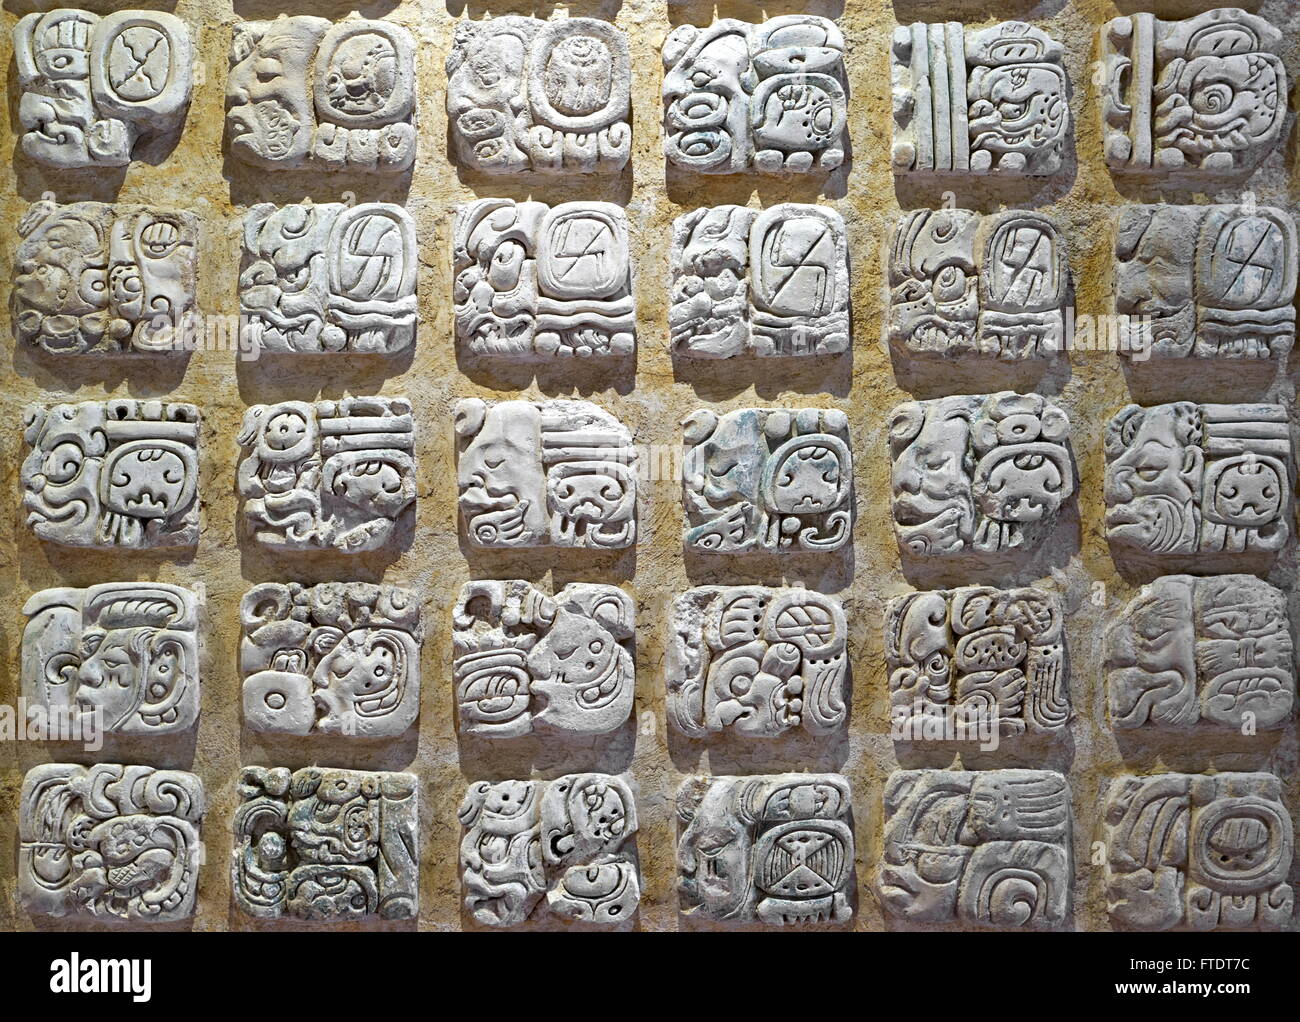 Système d'écriture maya, Musée archéologique de Palenque, Chiapas, Mexique Banque D'Images